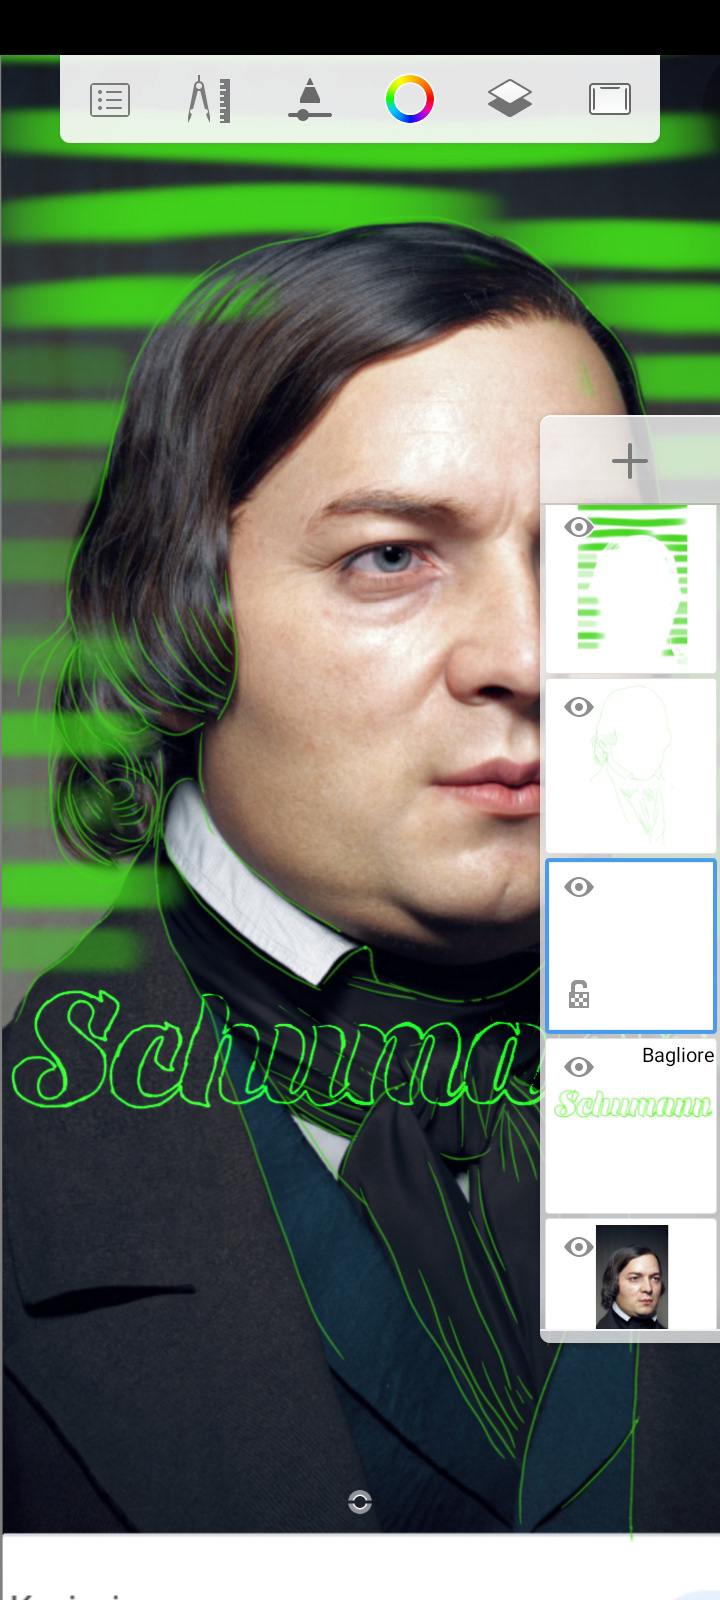 @Radio3tweet Schumann